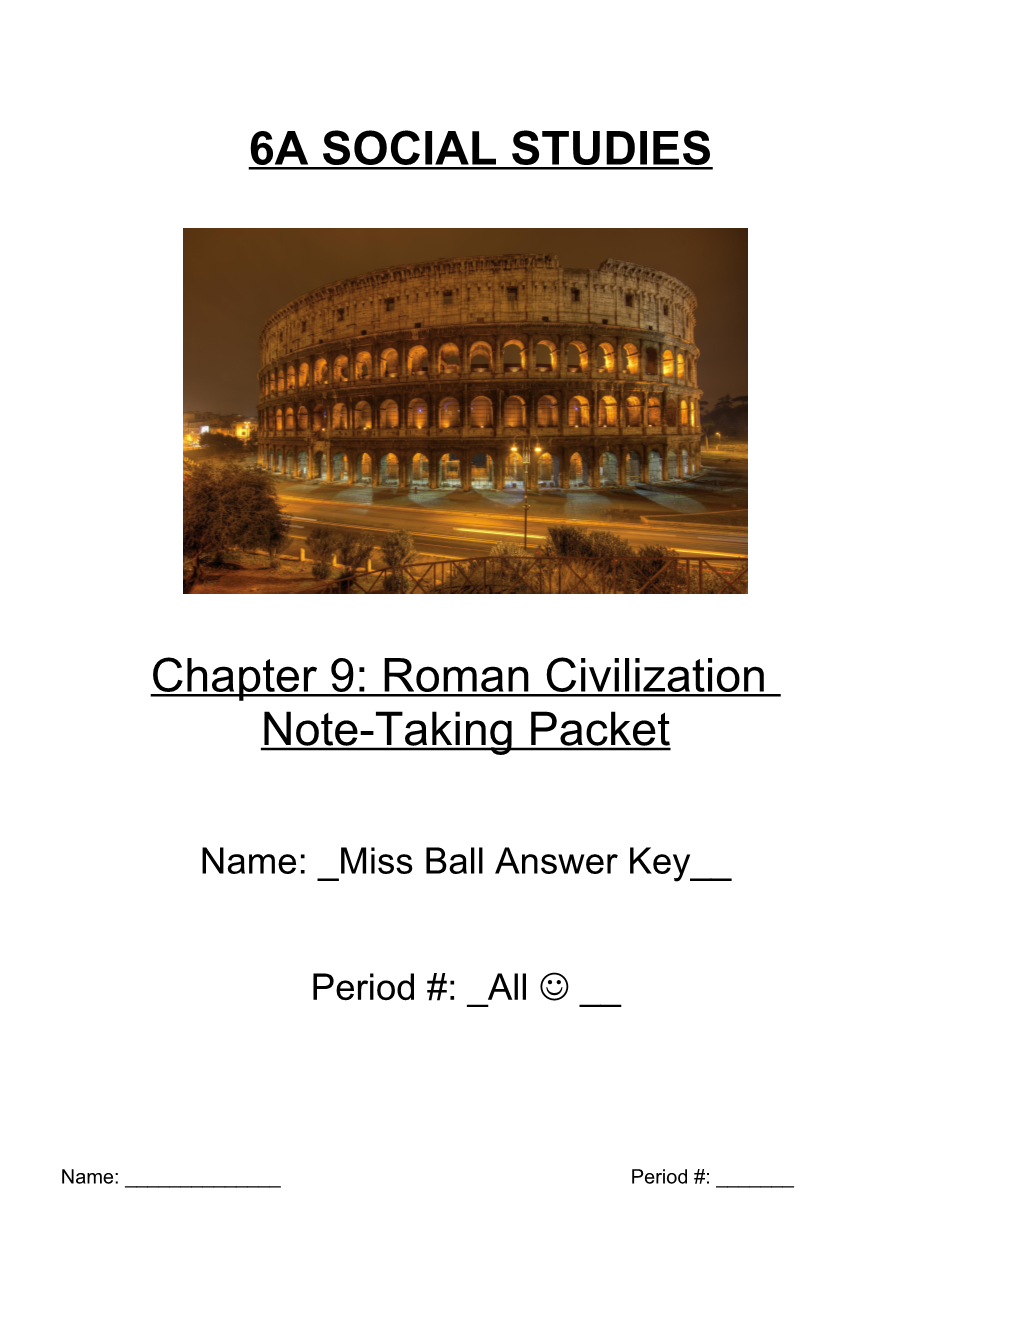 6A Social Studies